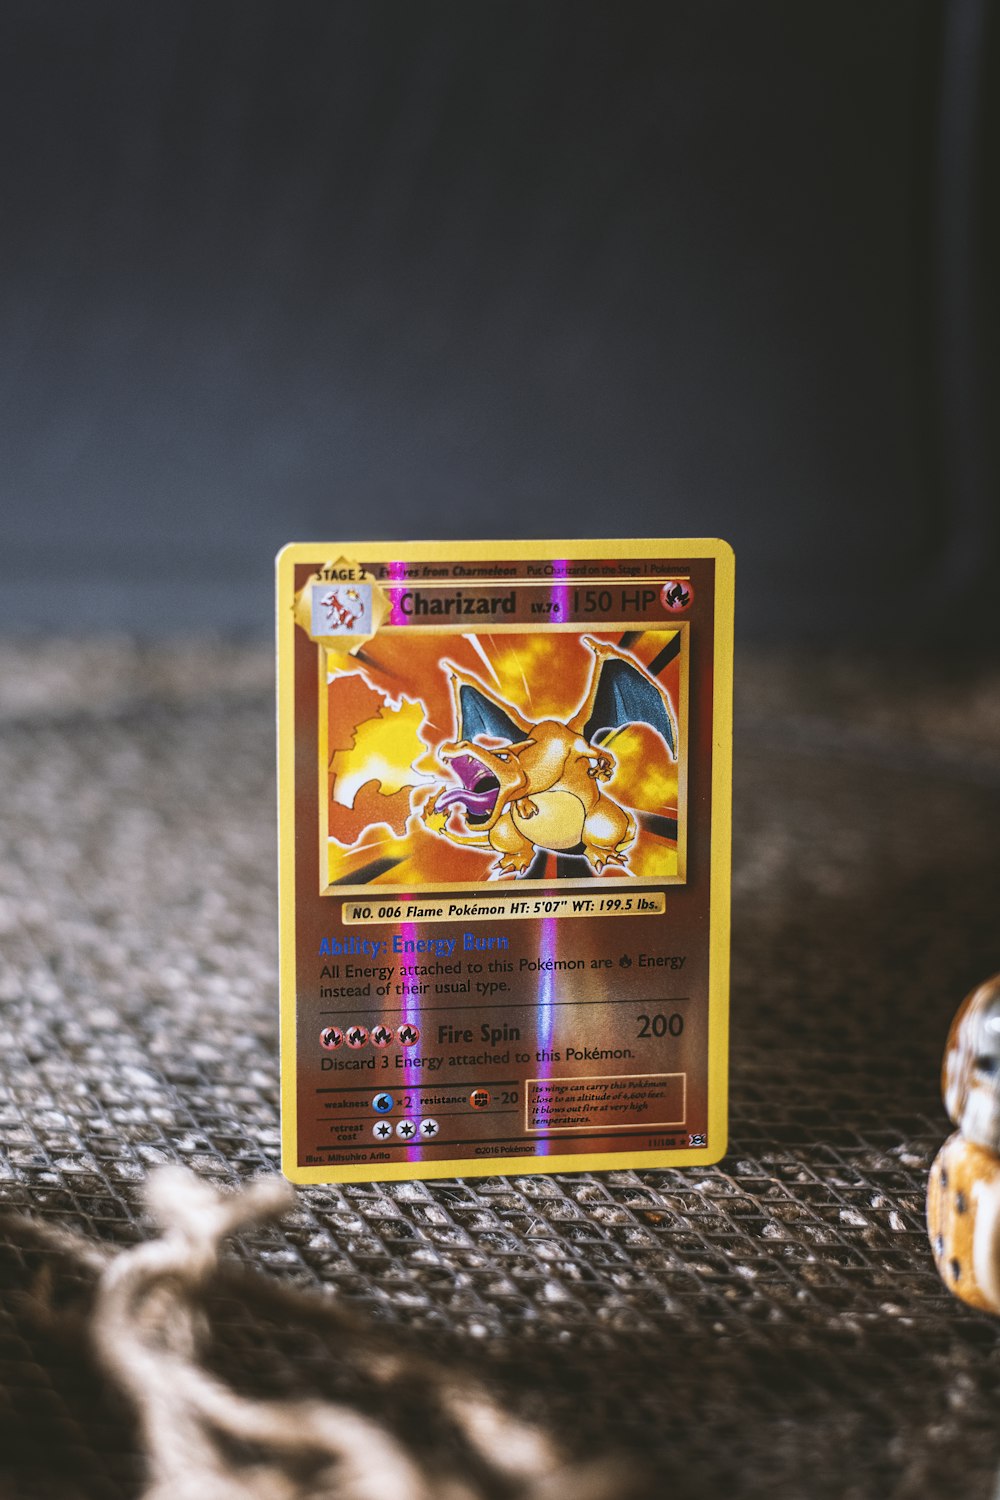 pokemon trading card on gray textile